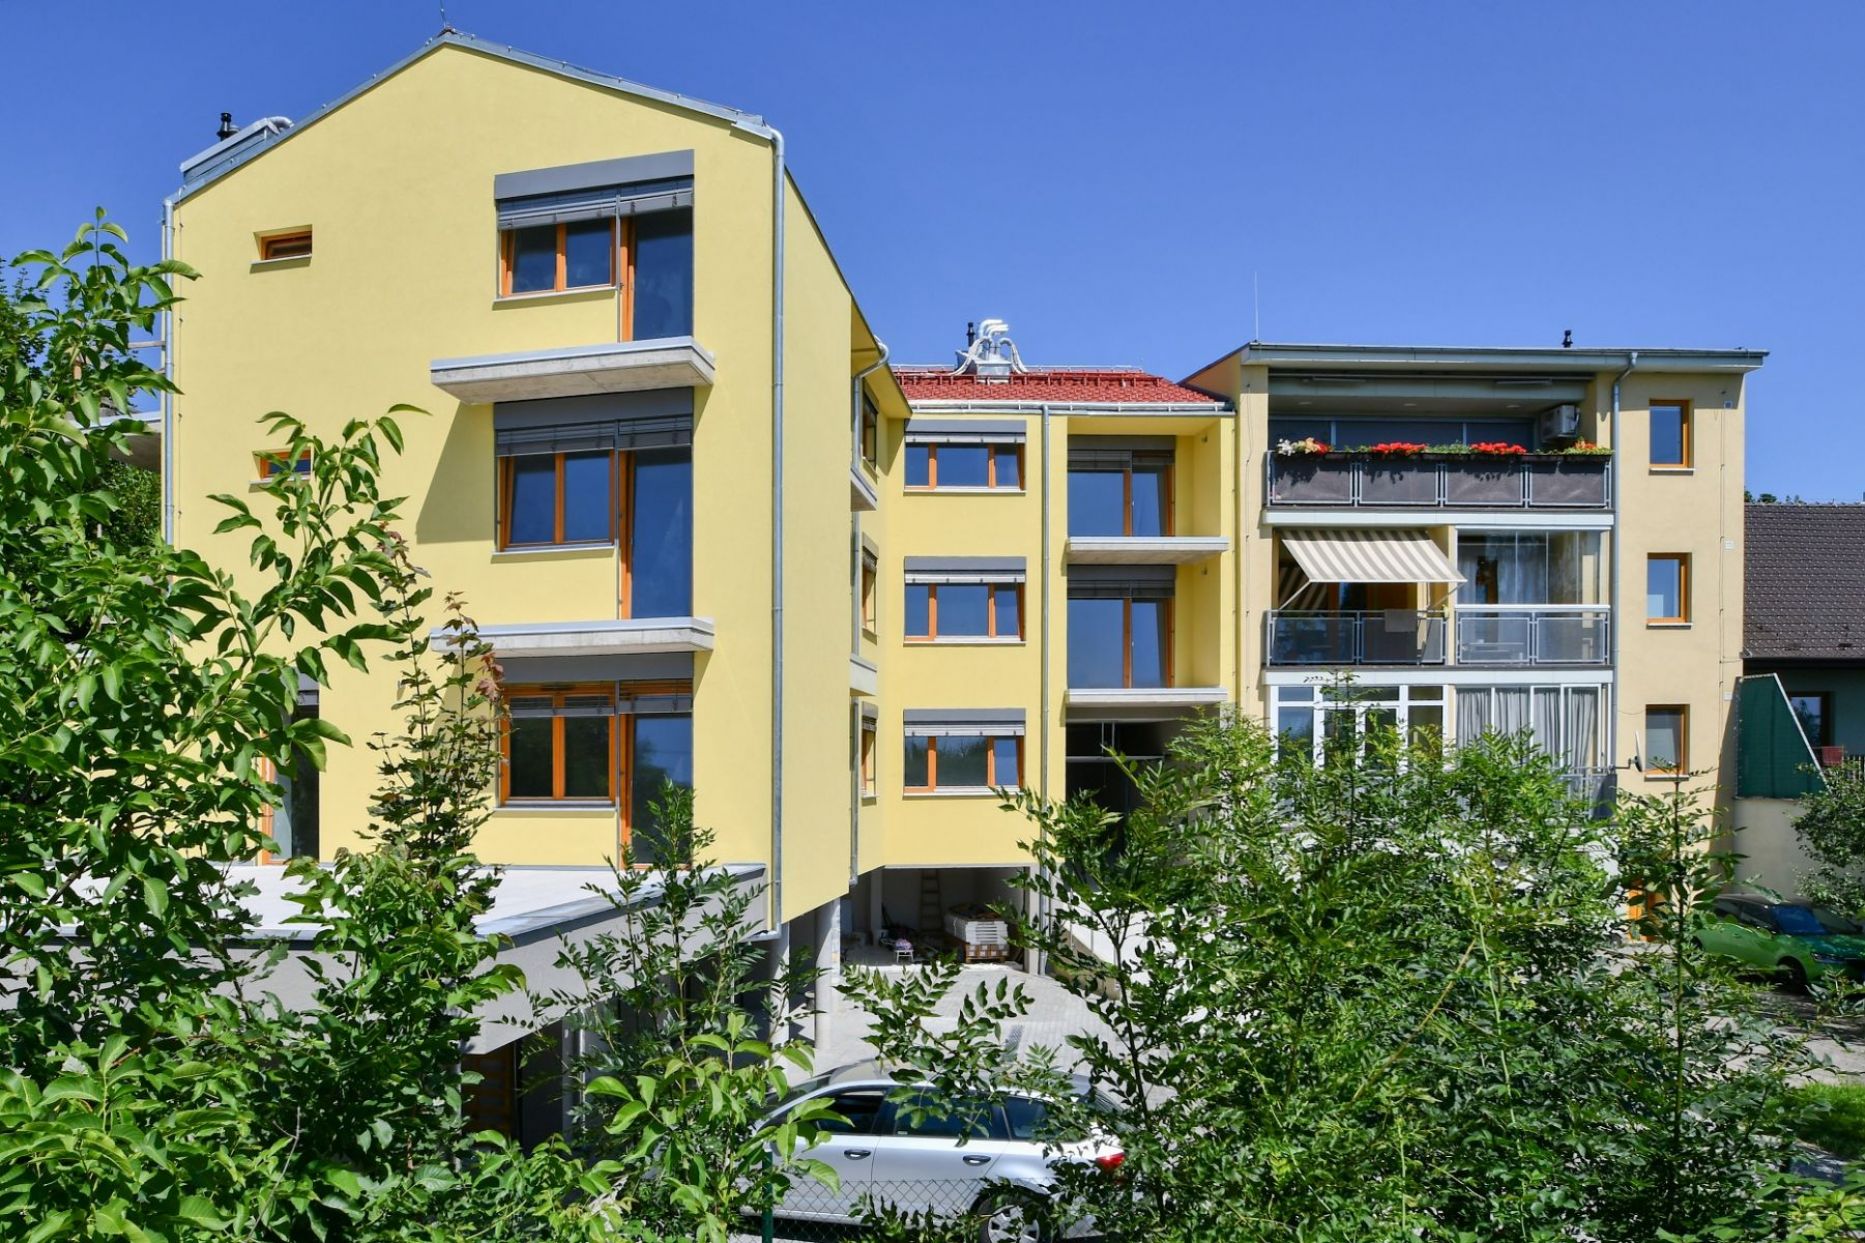 Prodej novostavby bytu 1+kk s garáží v Brně Líšni, ulice Holzova, obrázek č. 1